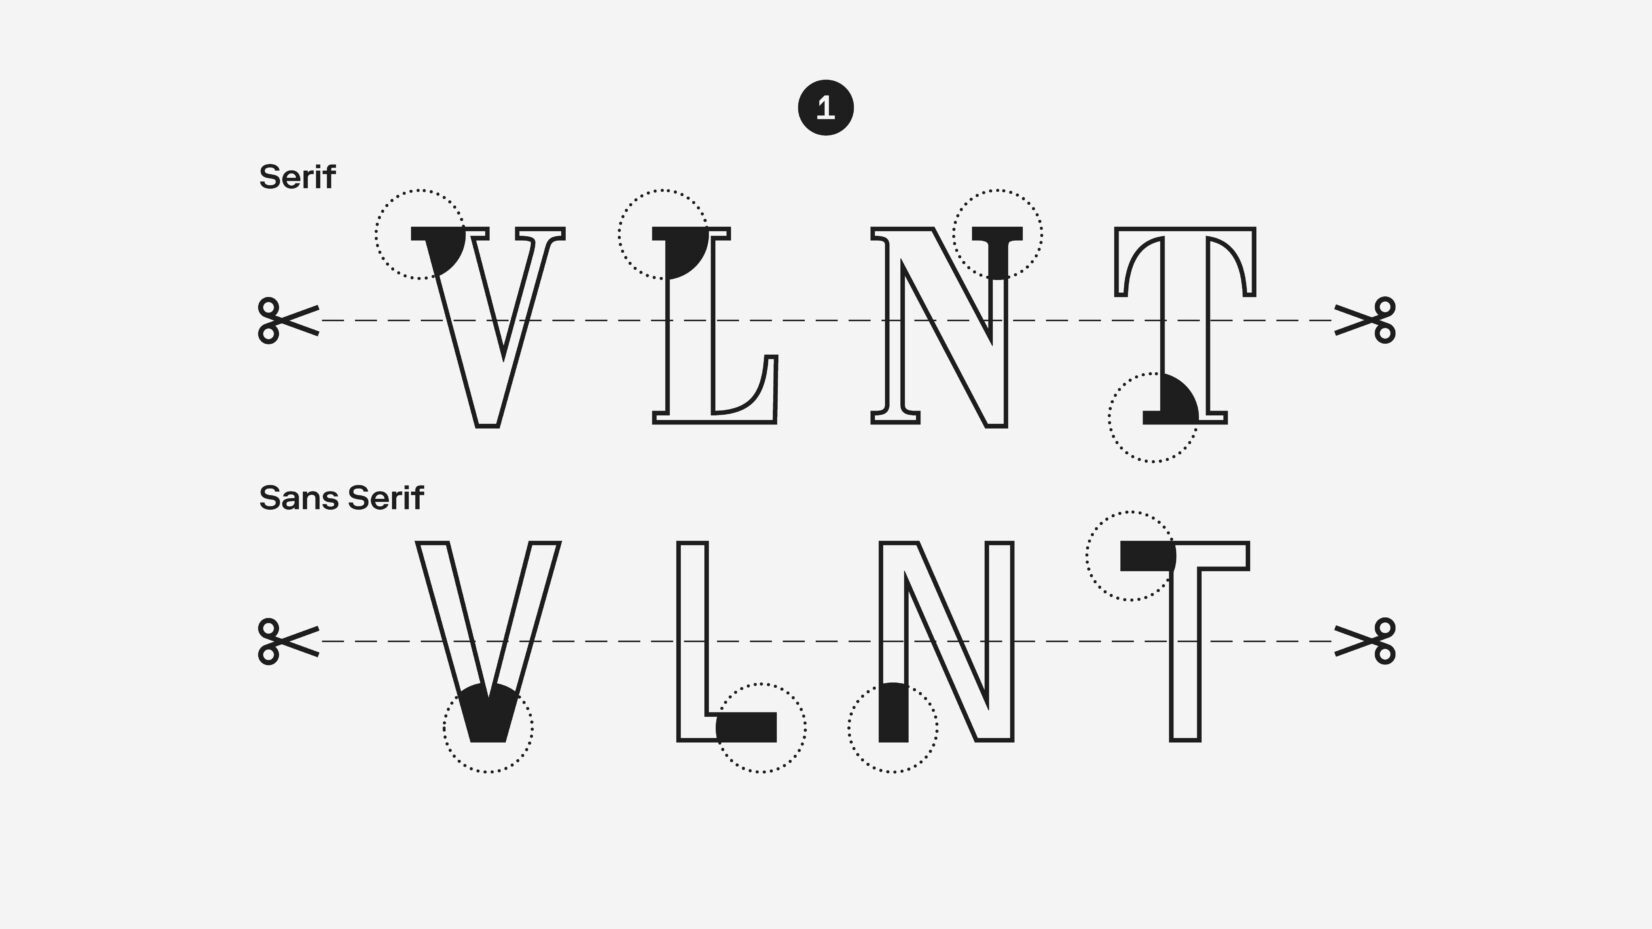 Die eigens für das Ristorante Valentino gestaltete Schrift, wurde aus den zwei Schrifttypen Serif und Sans Serif zusammengesetzt.